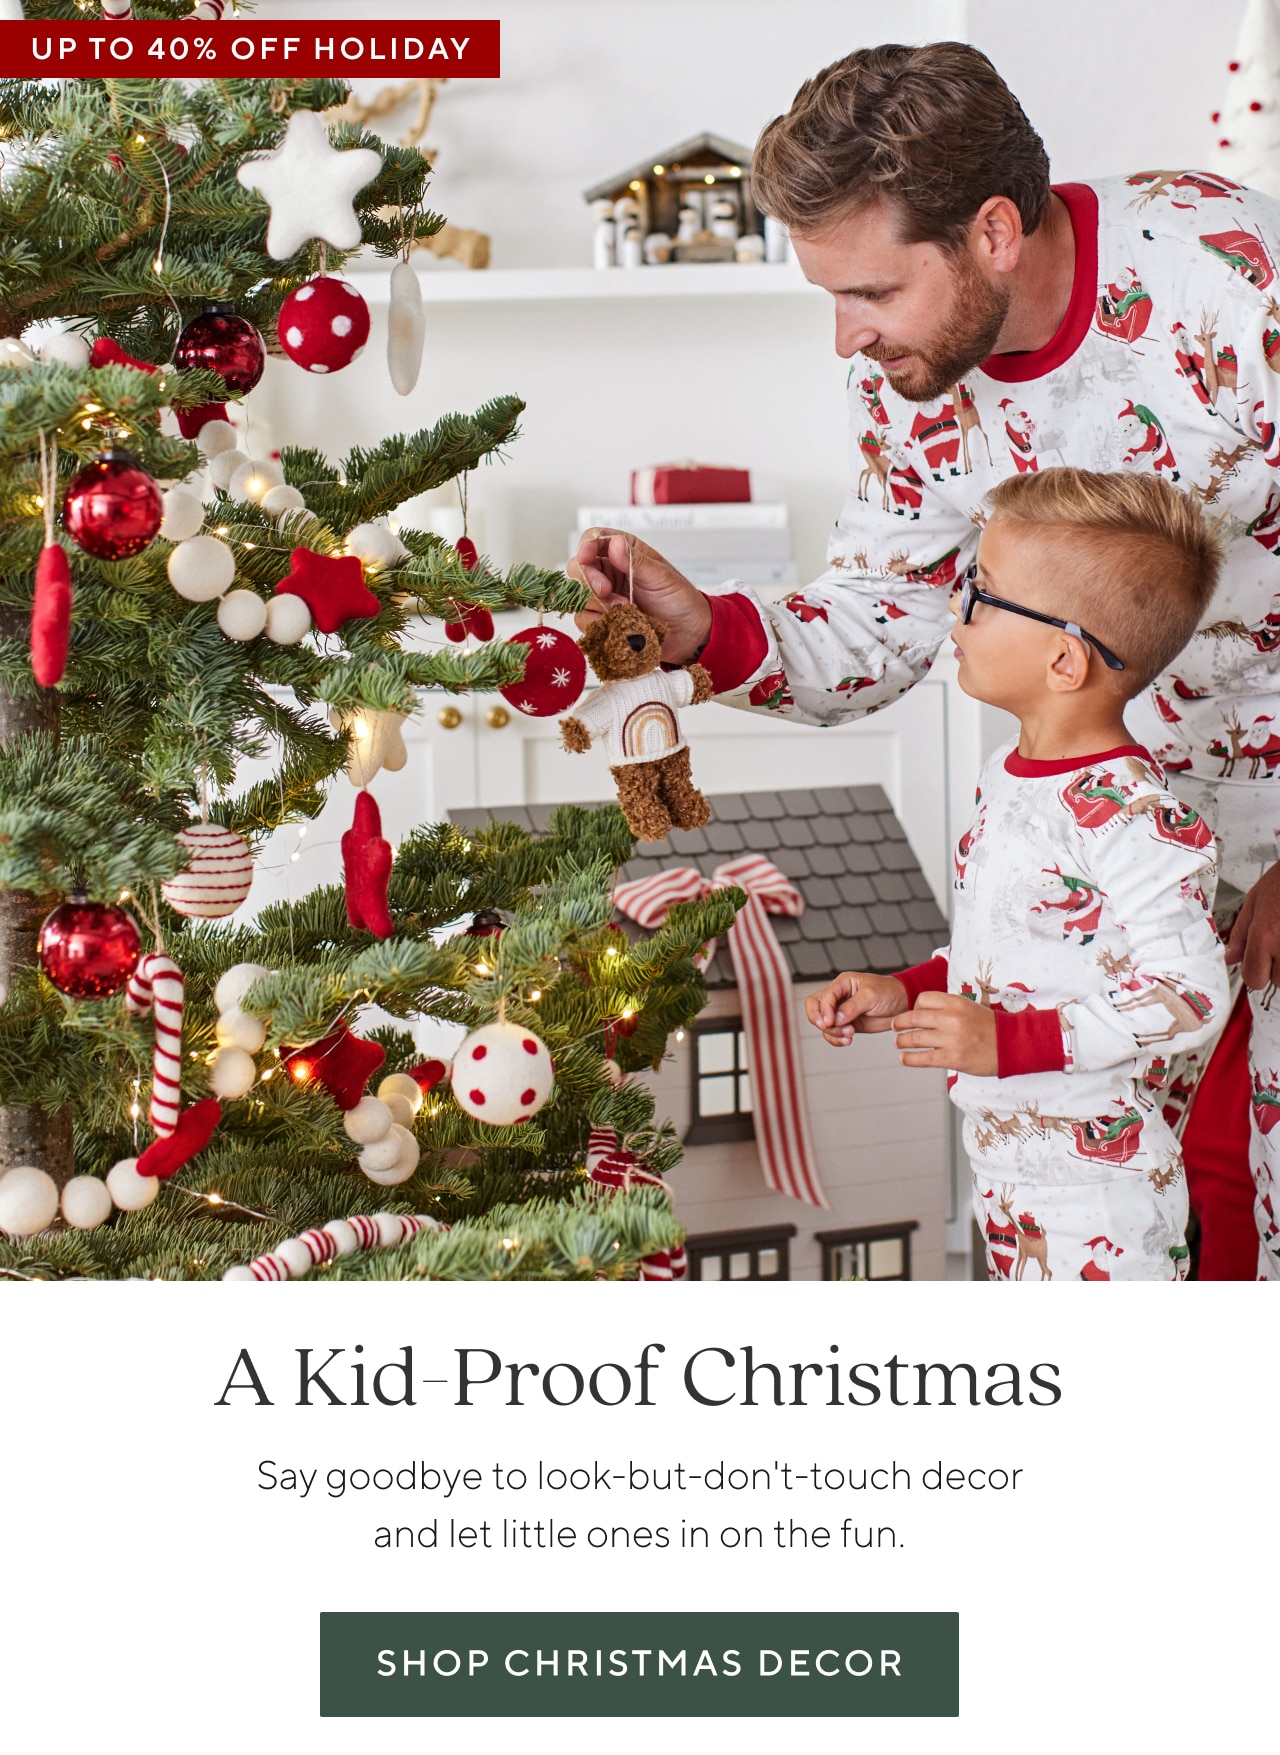 A KID-PROOF CHRISTMAS - SHOP CHRISTMAS DECOR